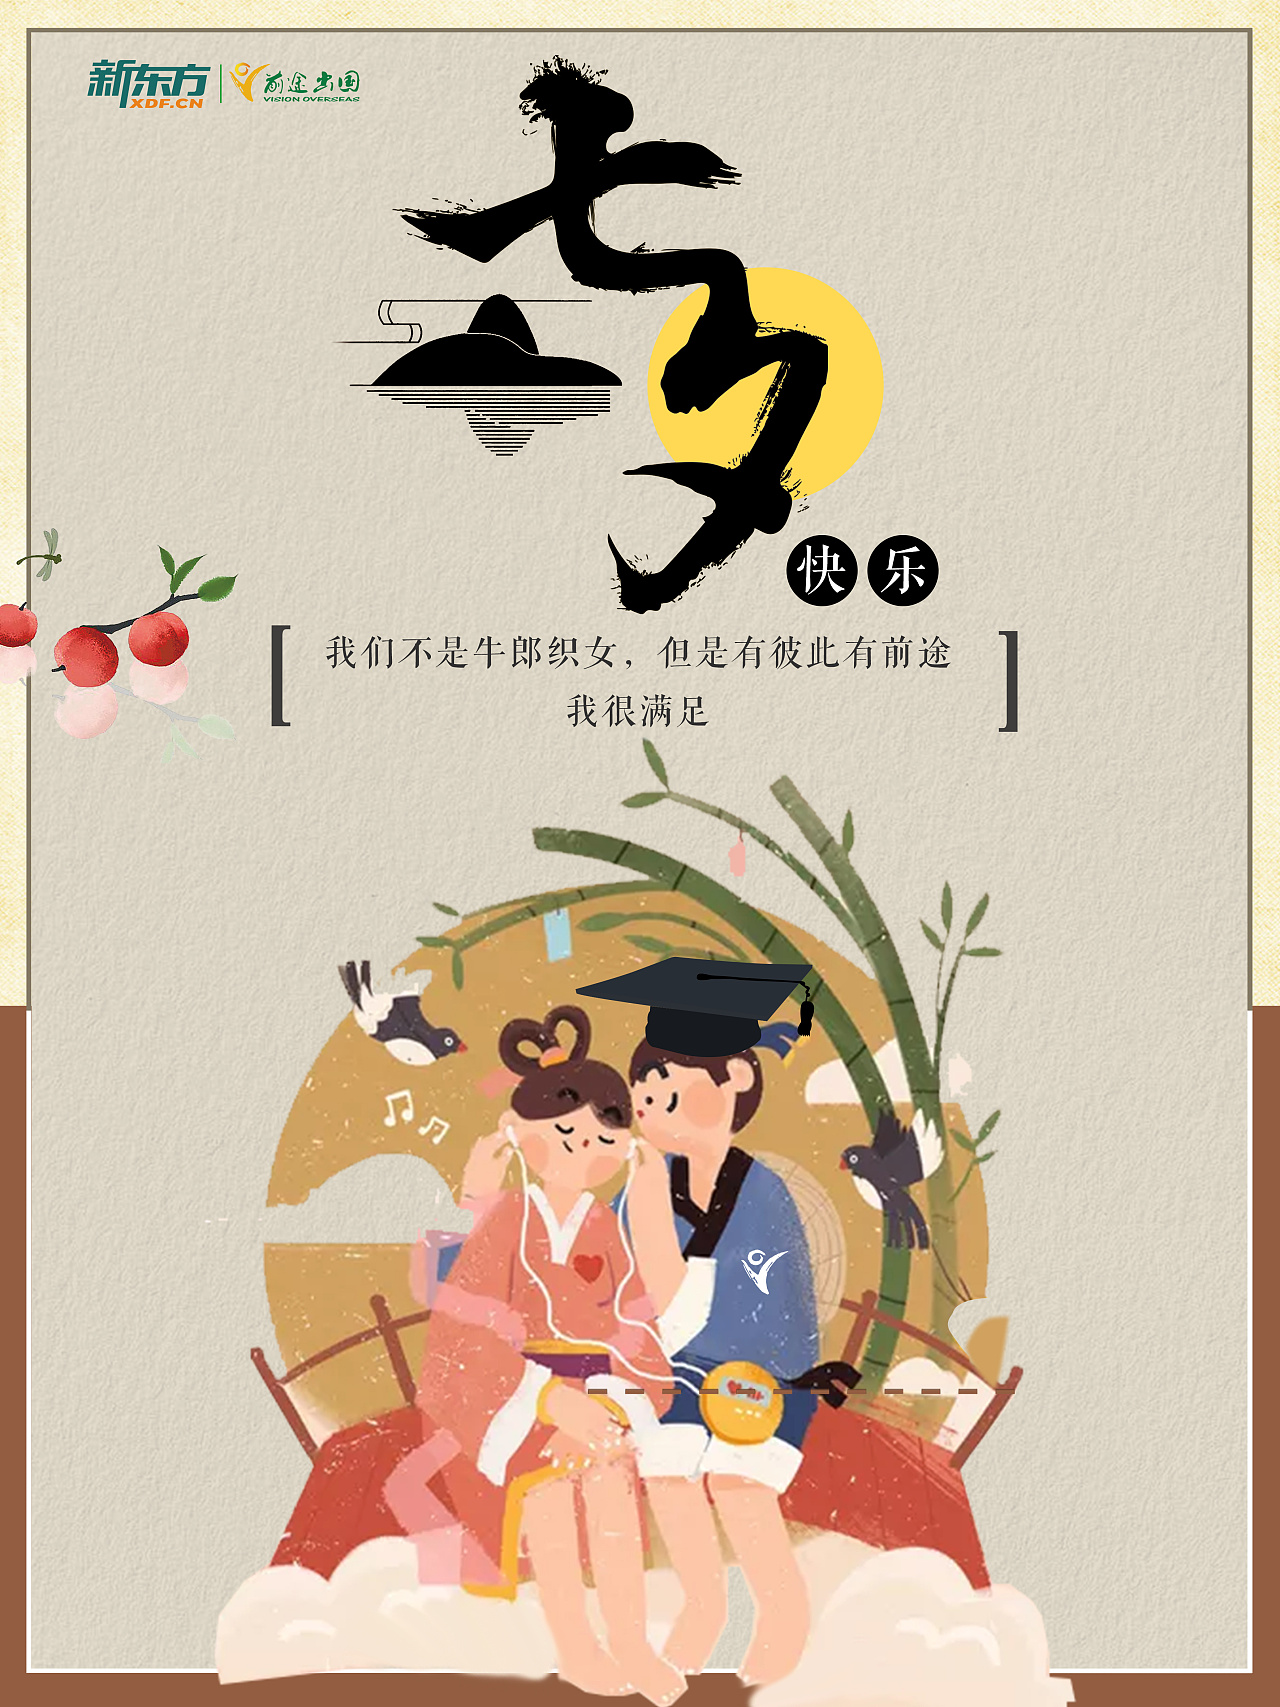 七夕节活动促销营销通知方形海报_图片模板素材-稿定设计